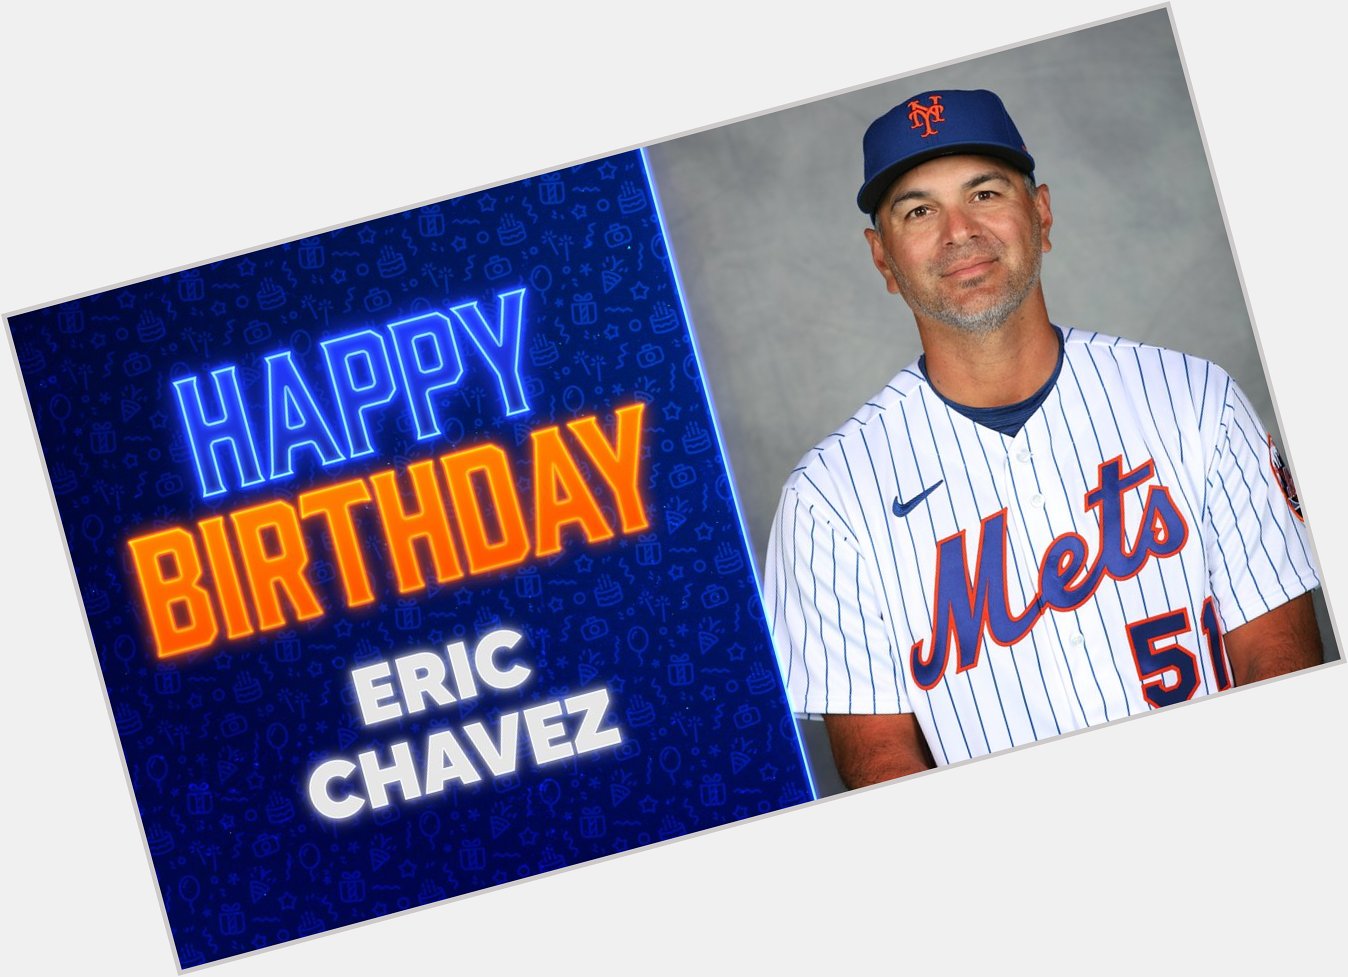 Happy birthday, Eric Chavez!  